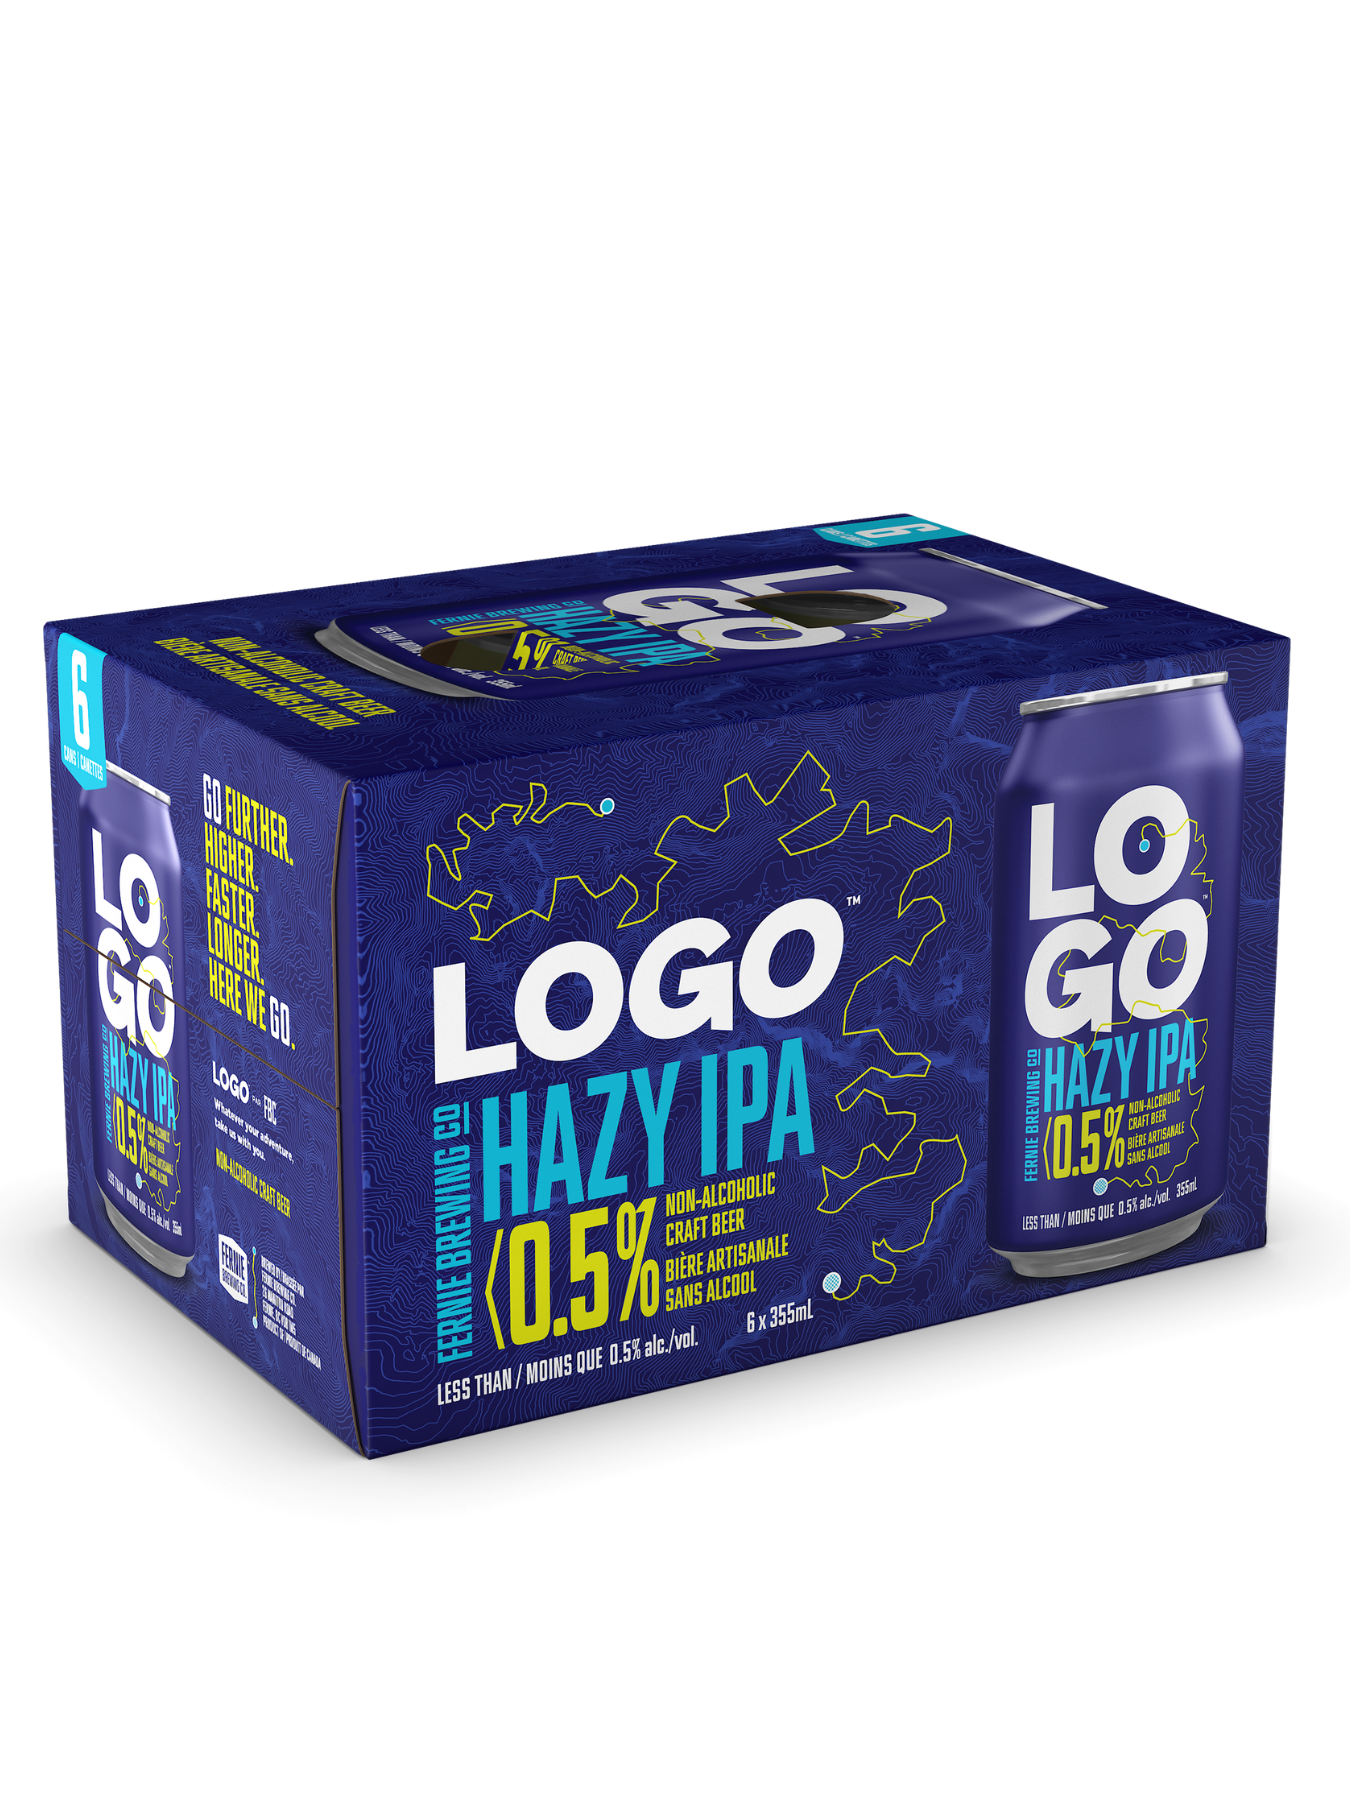 LOGO Non-Alc Hazy IPA 6-Pack